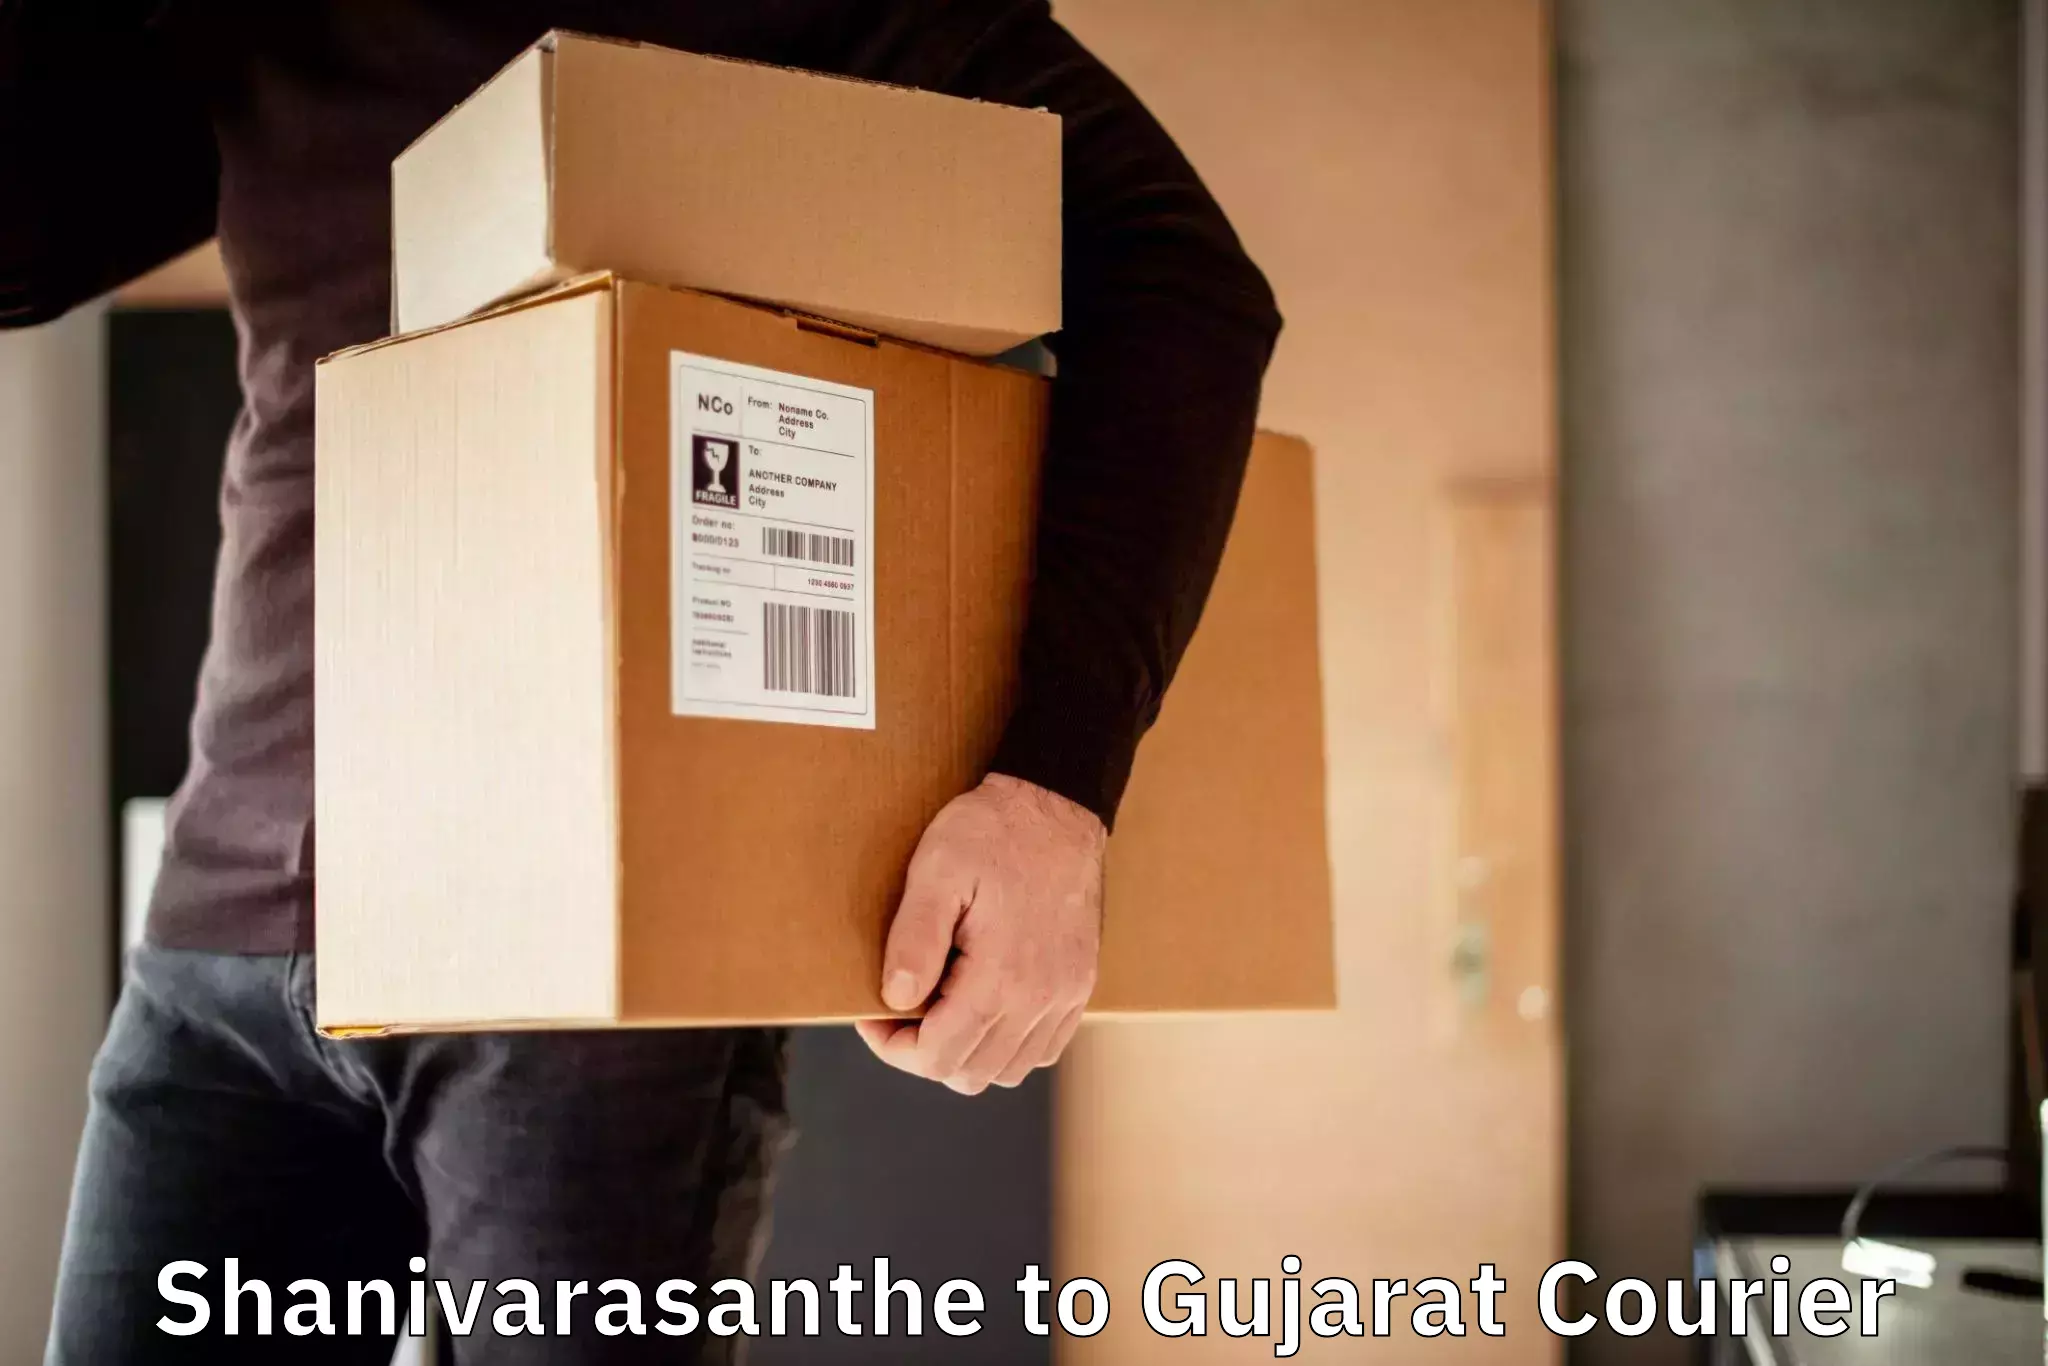 Efficient parcel service Shanivarasanthe to IIT Gandhi Nagar